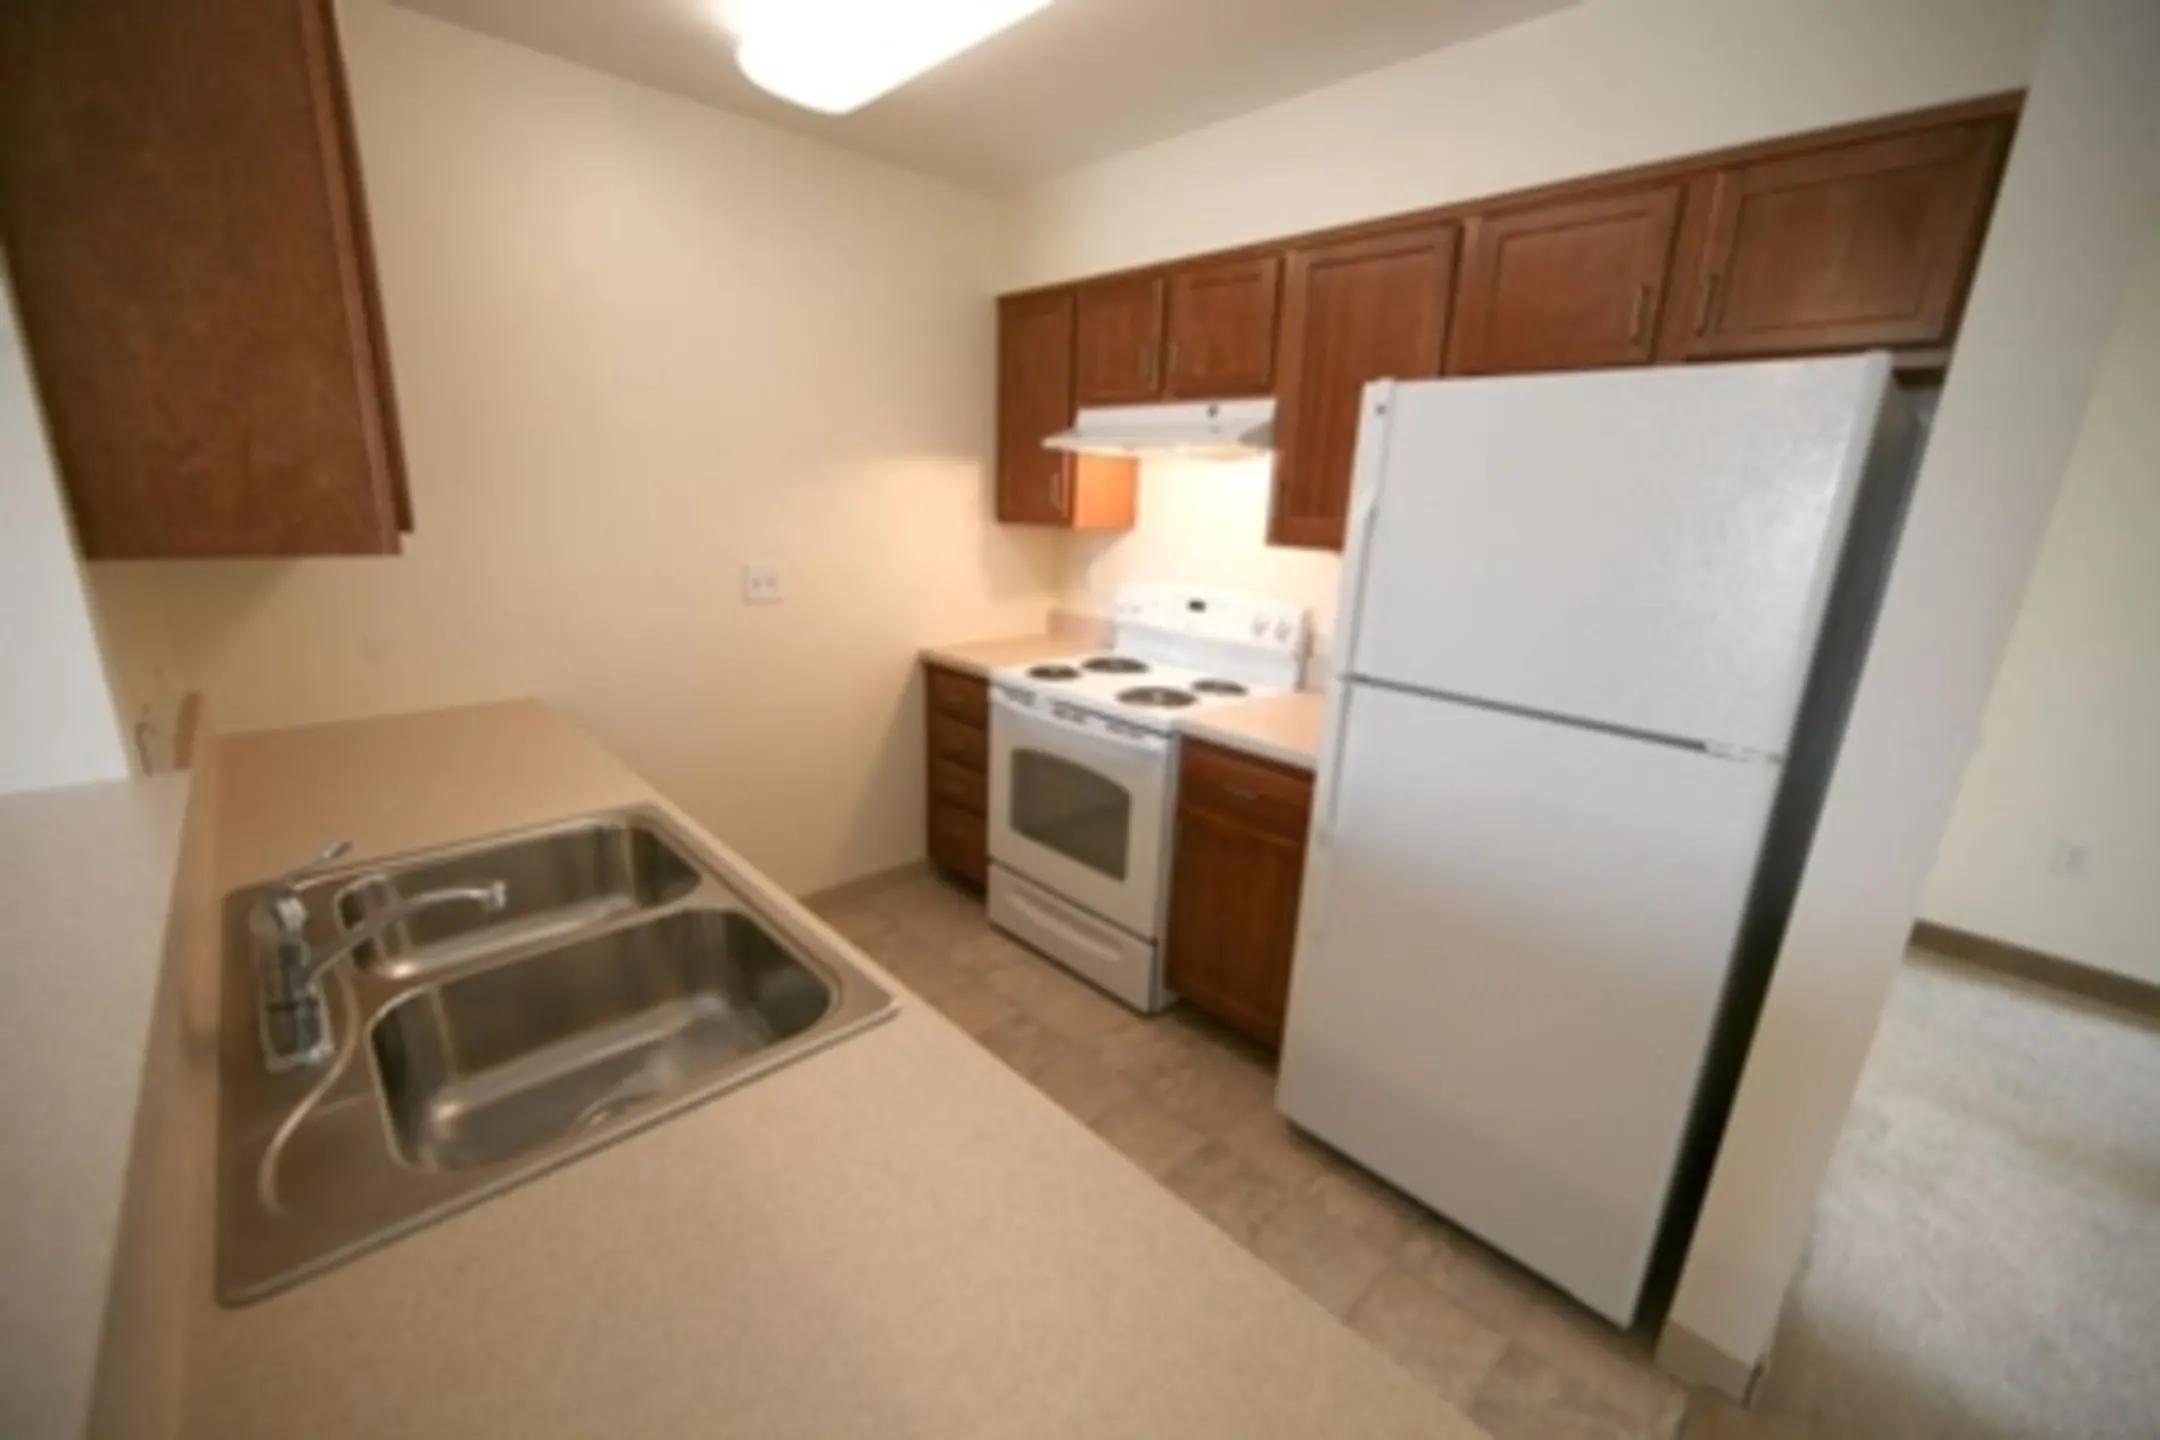 Kitchen - Marley Meadows Apartments - Glen Burnie, MD